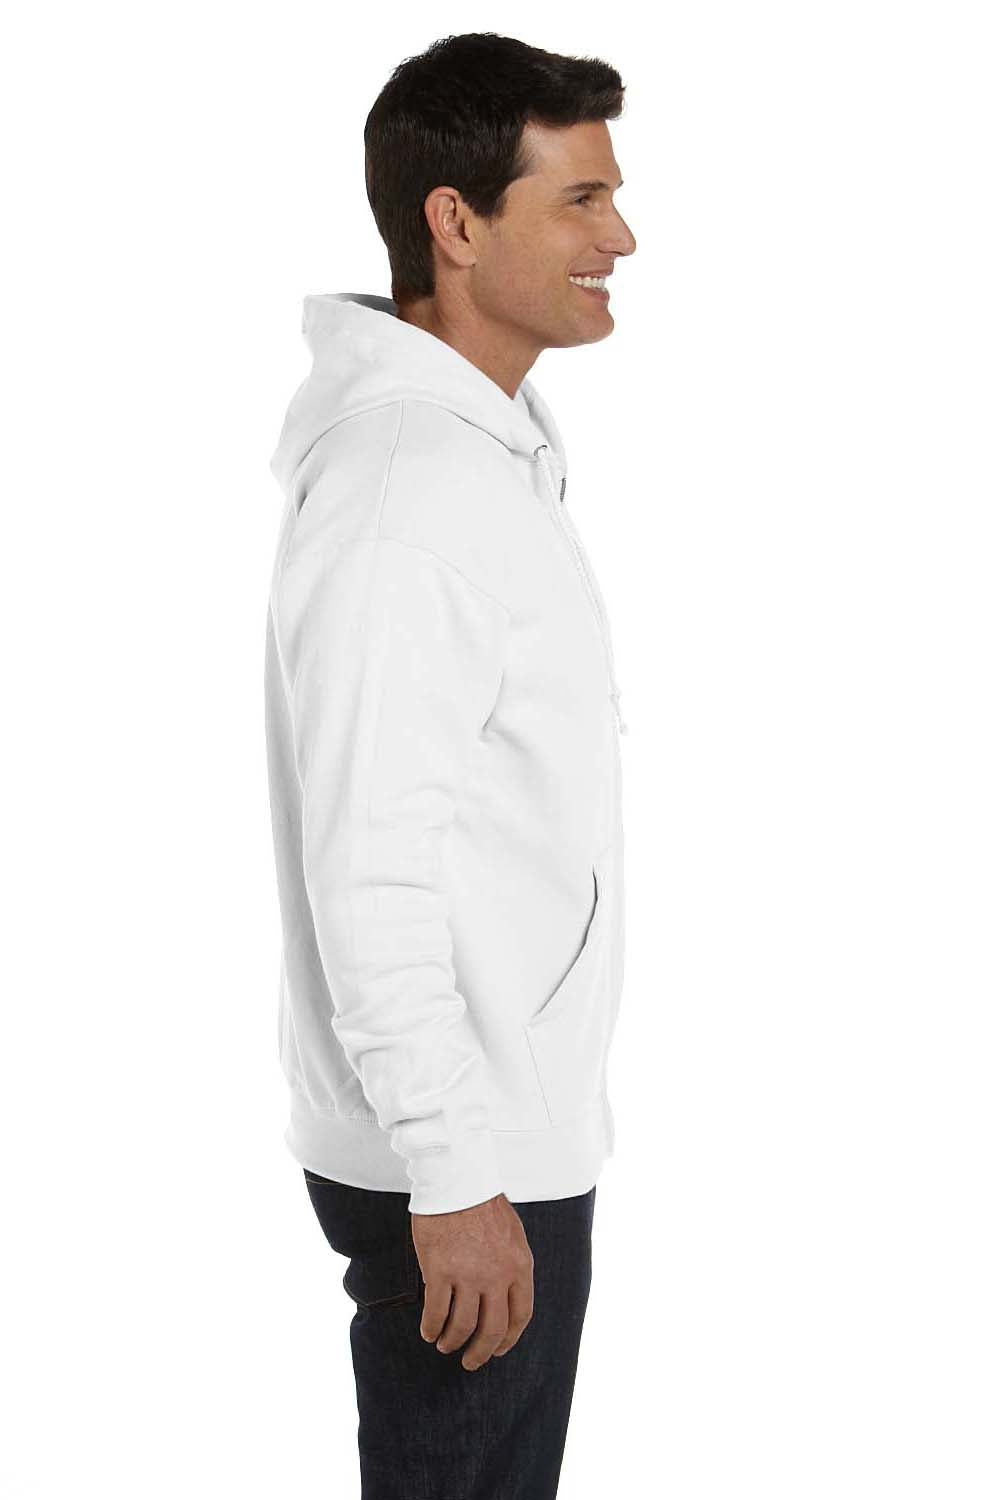 Hanes P180 Mens EcoSmart Print Pro XP Full Zip Hooded Sweatshirt Hoodie White Side